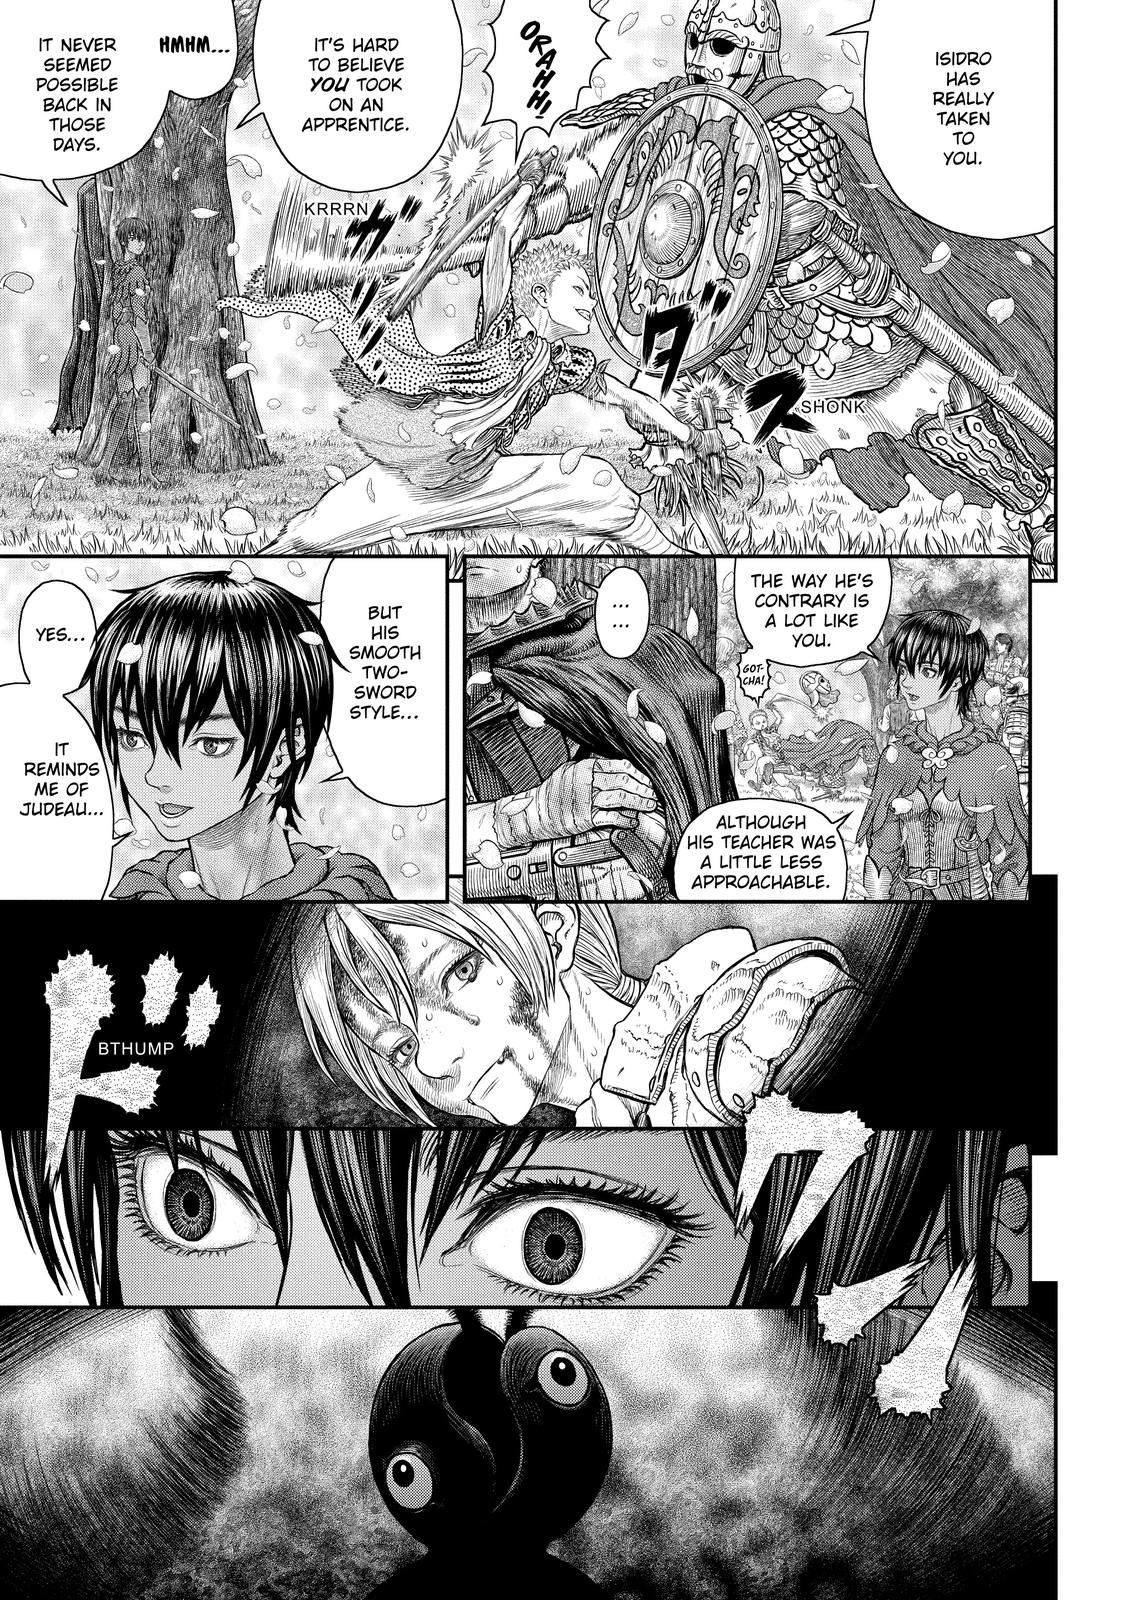 Berserk Manga Chapter 359 image 17